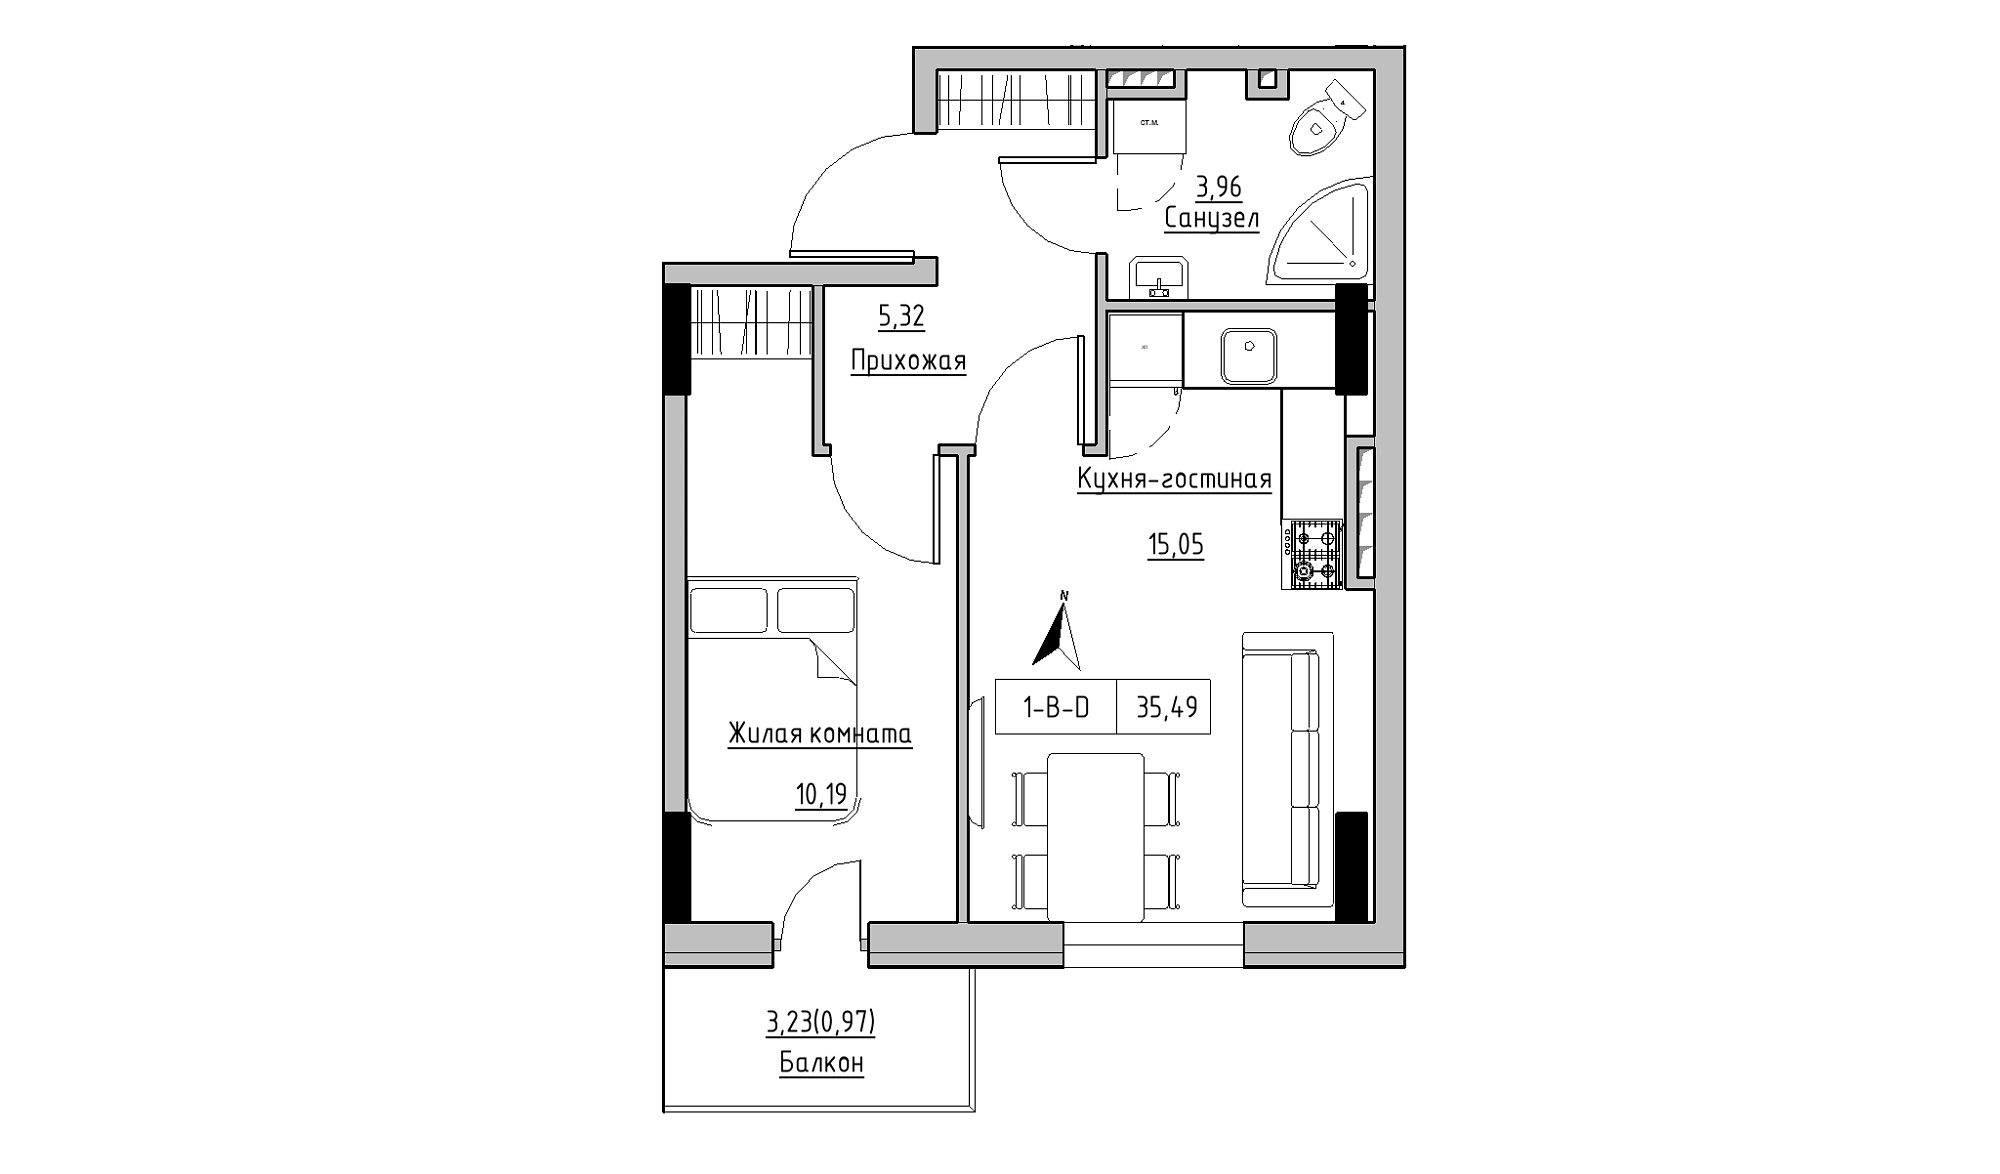 Планировка 1-к квартира площей 35.49м2, KS-025-04/0011.